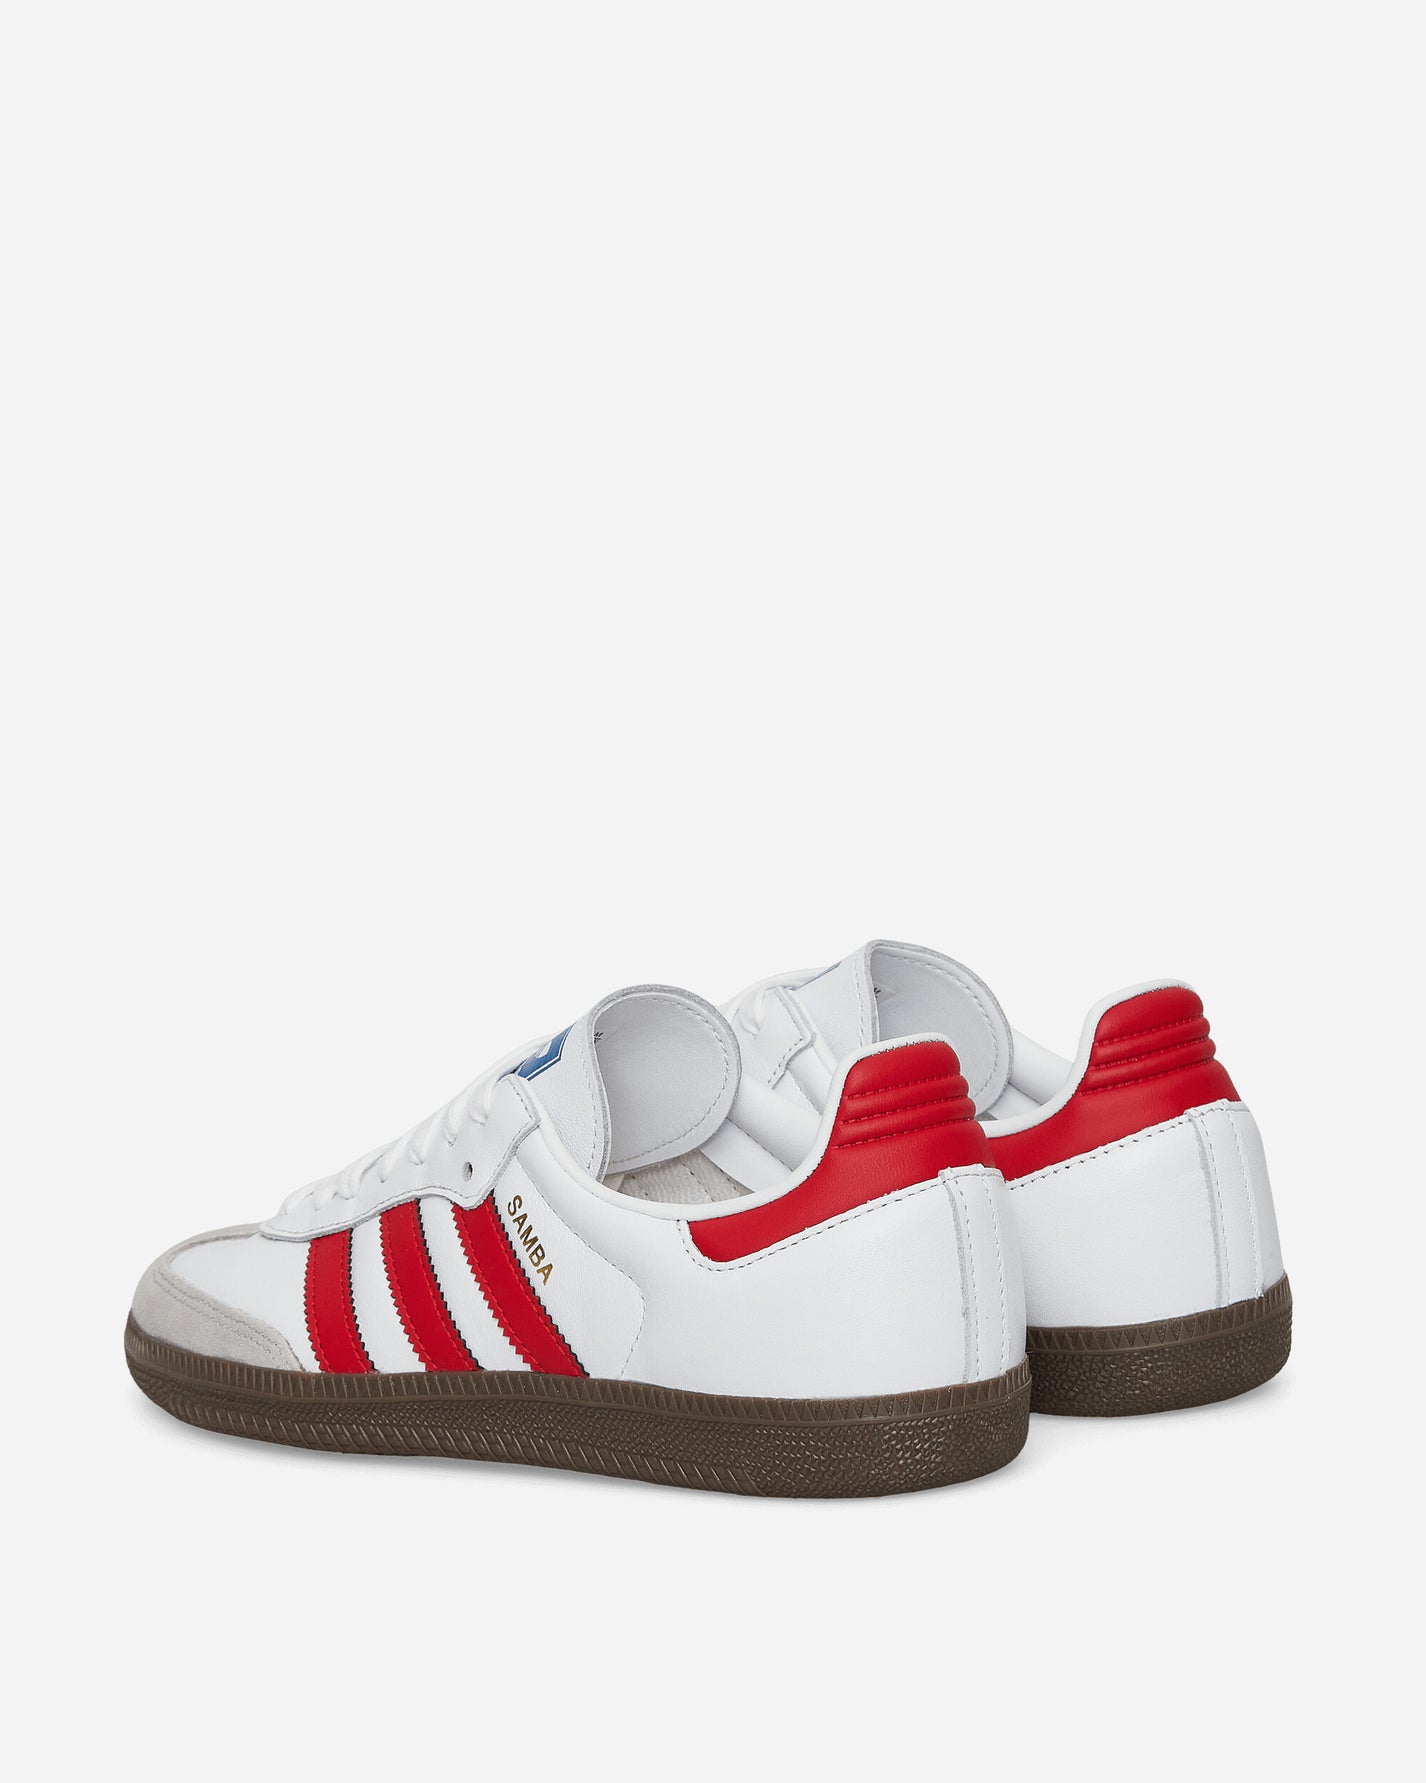 adidas Samba Og Ftwr White/Better Scarlet Sneakers Low IG1025